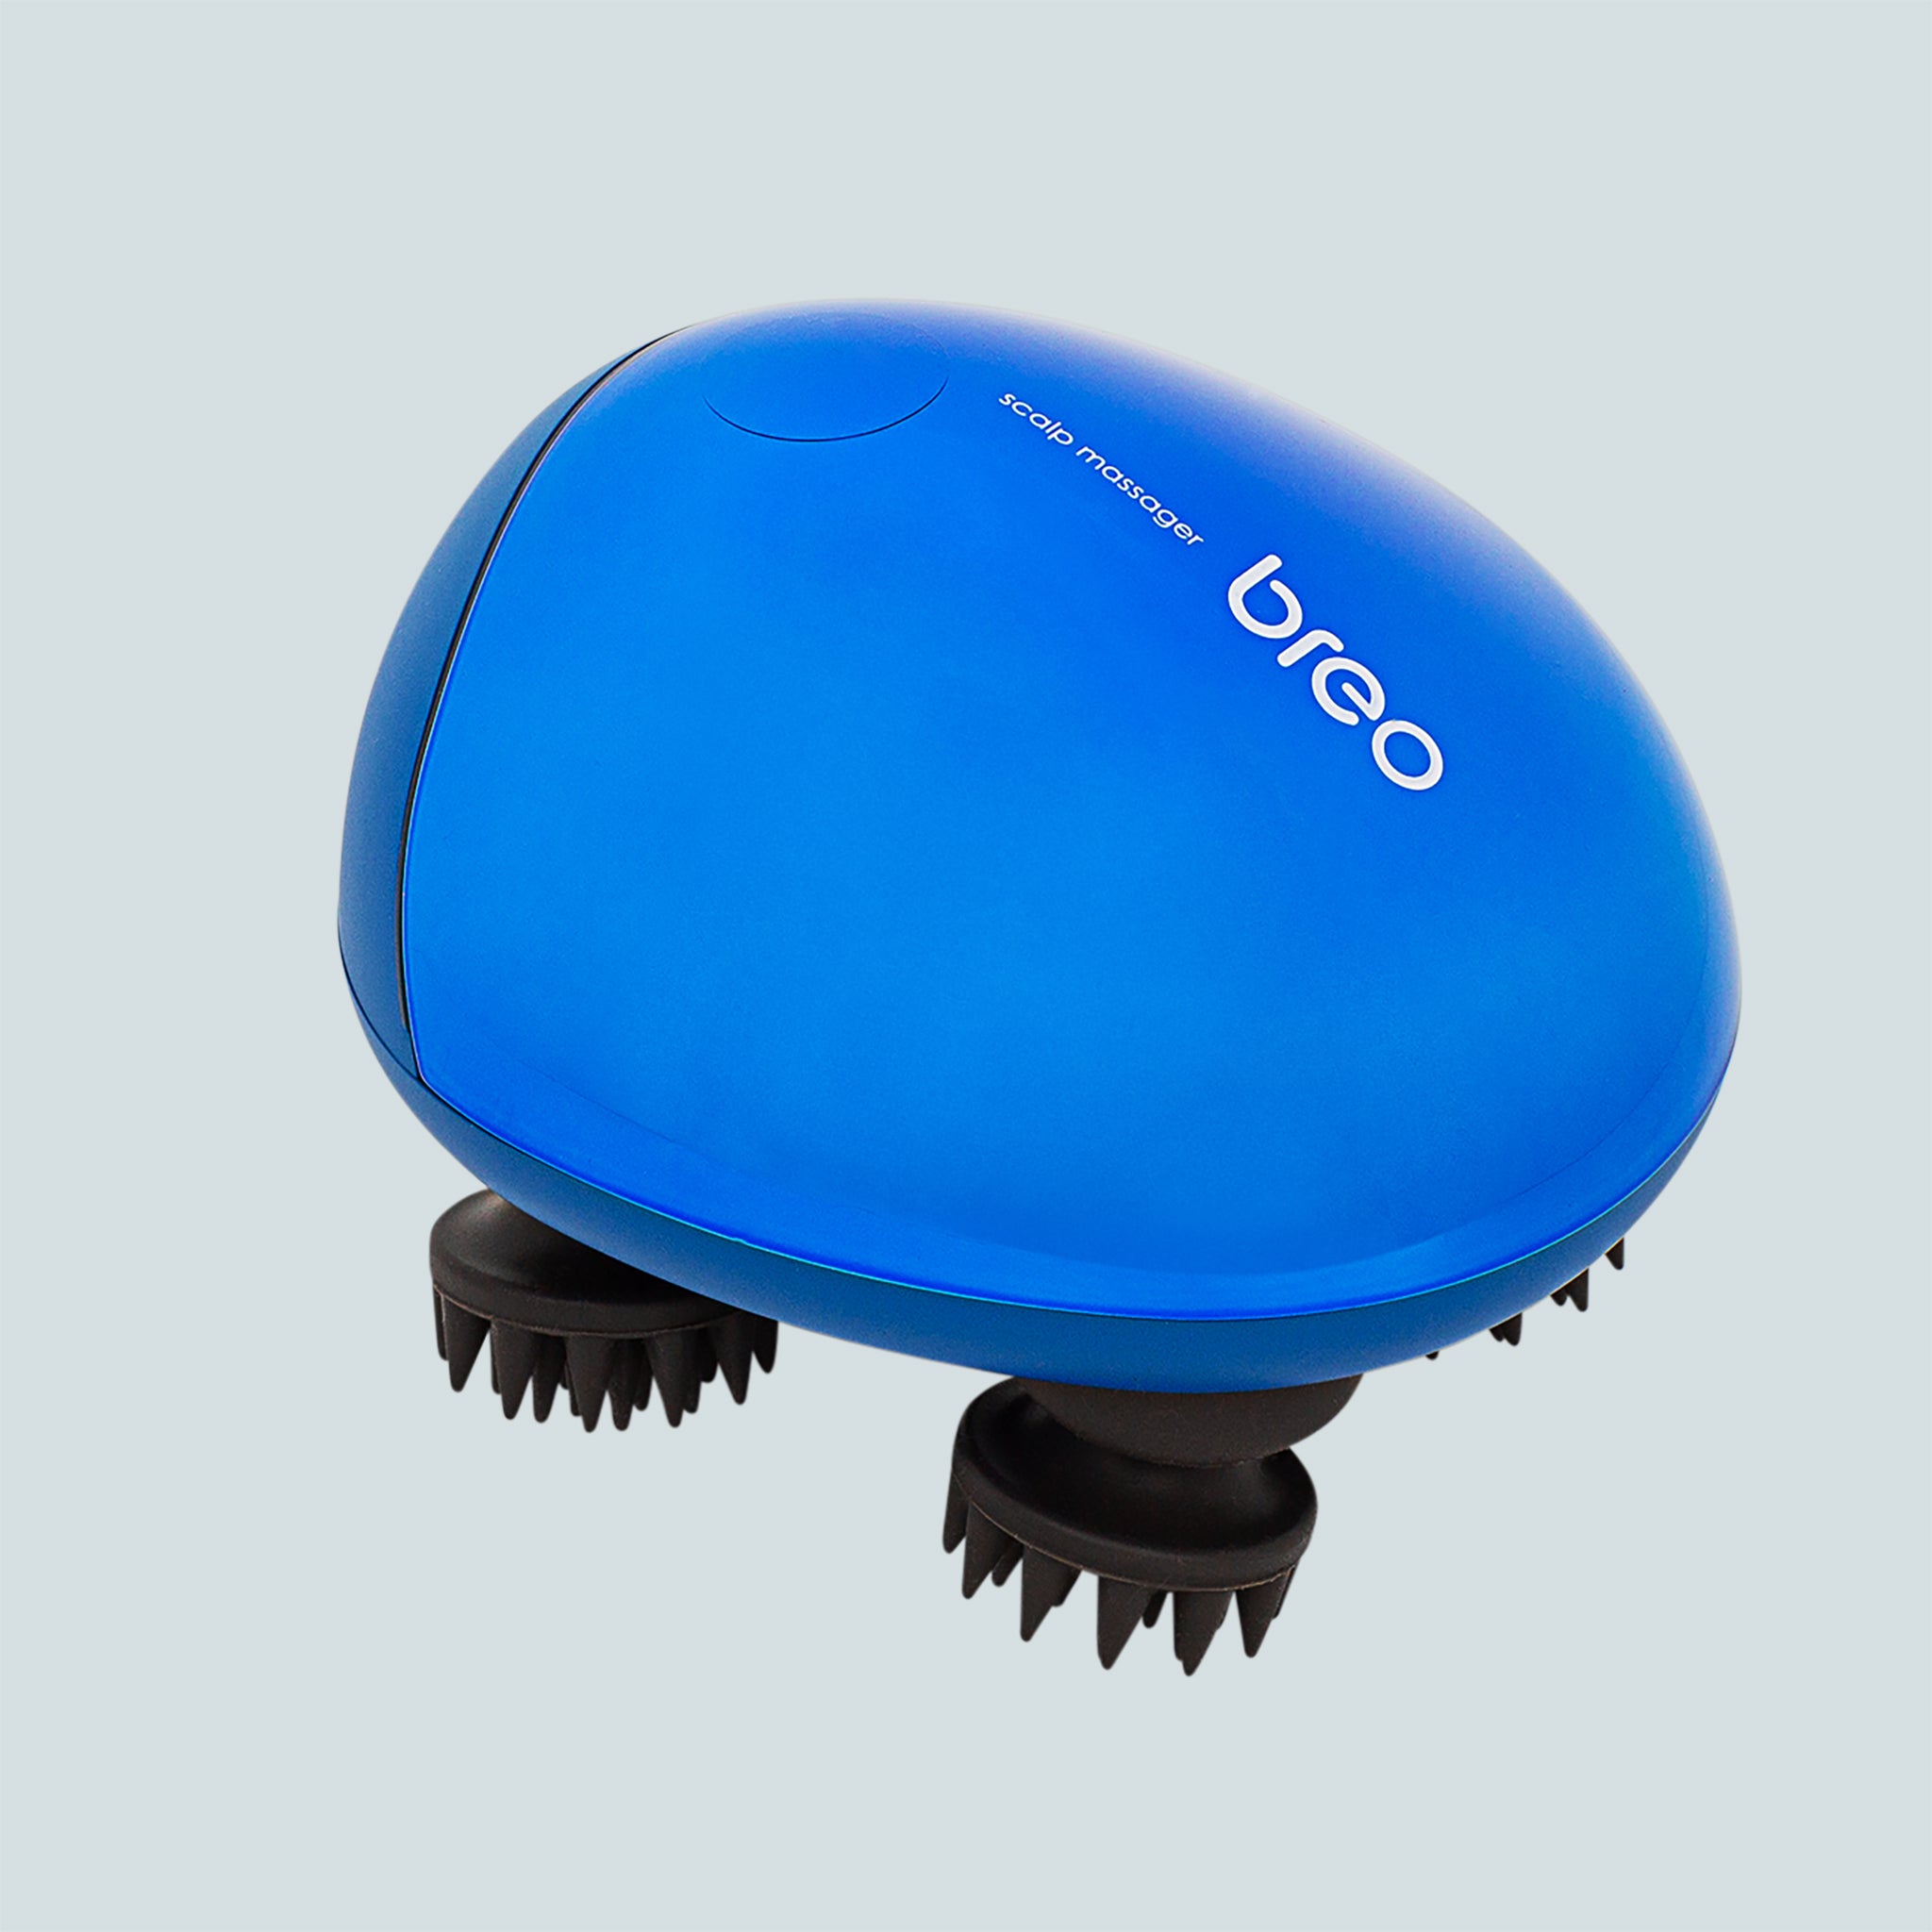 Breo scalp massager blue